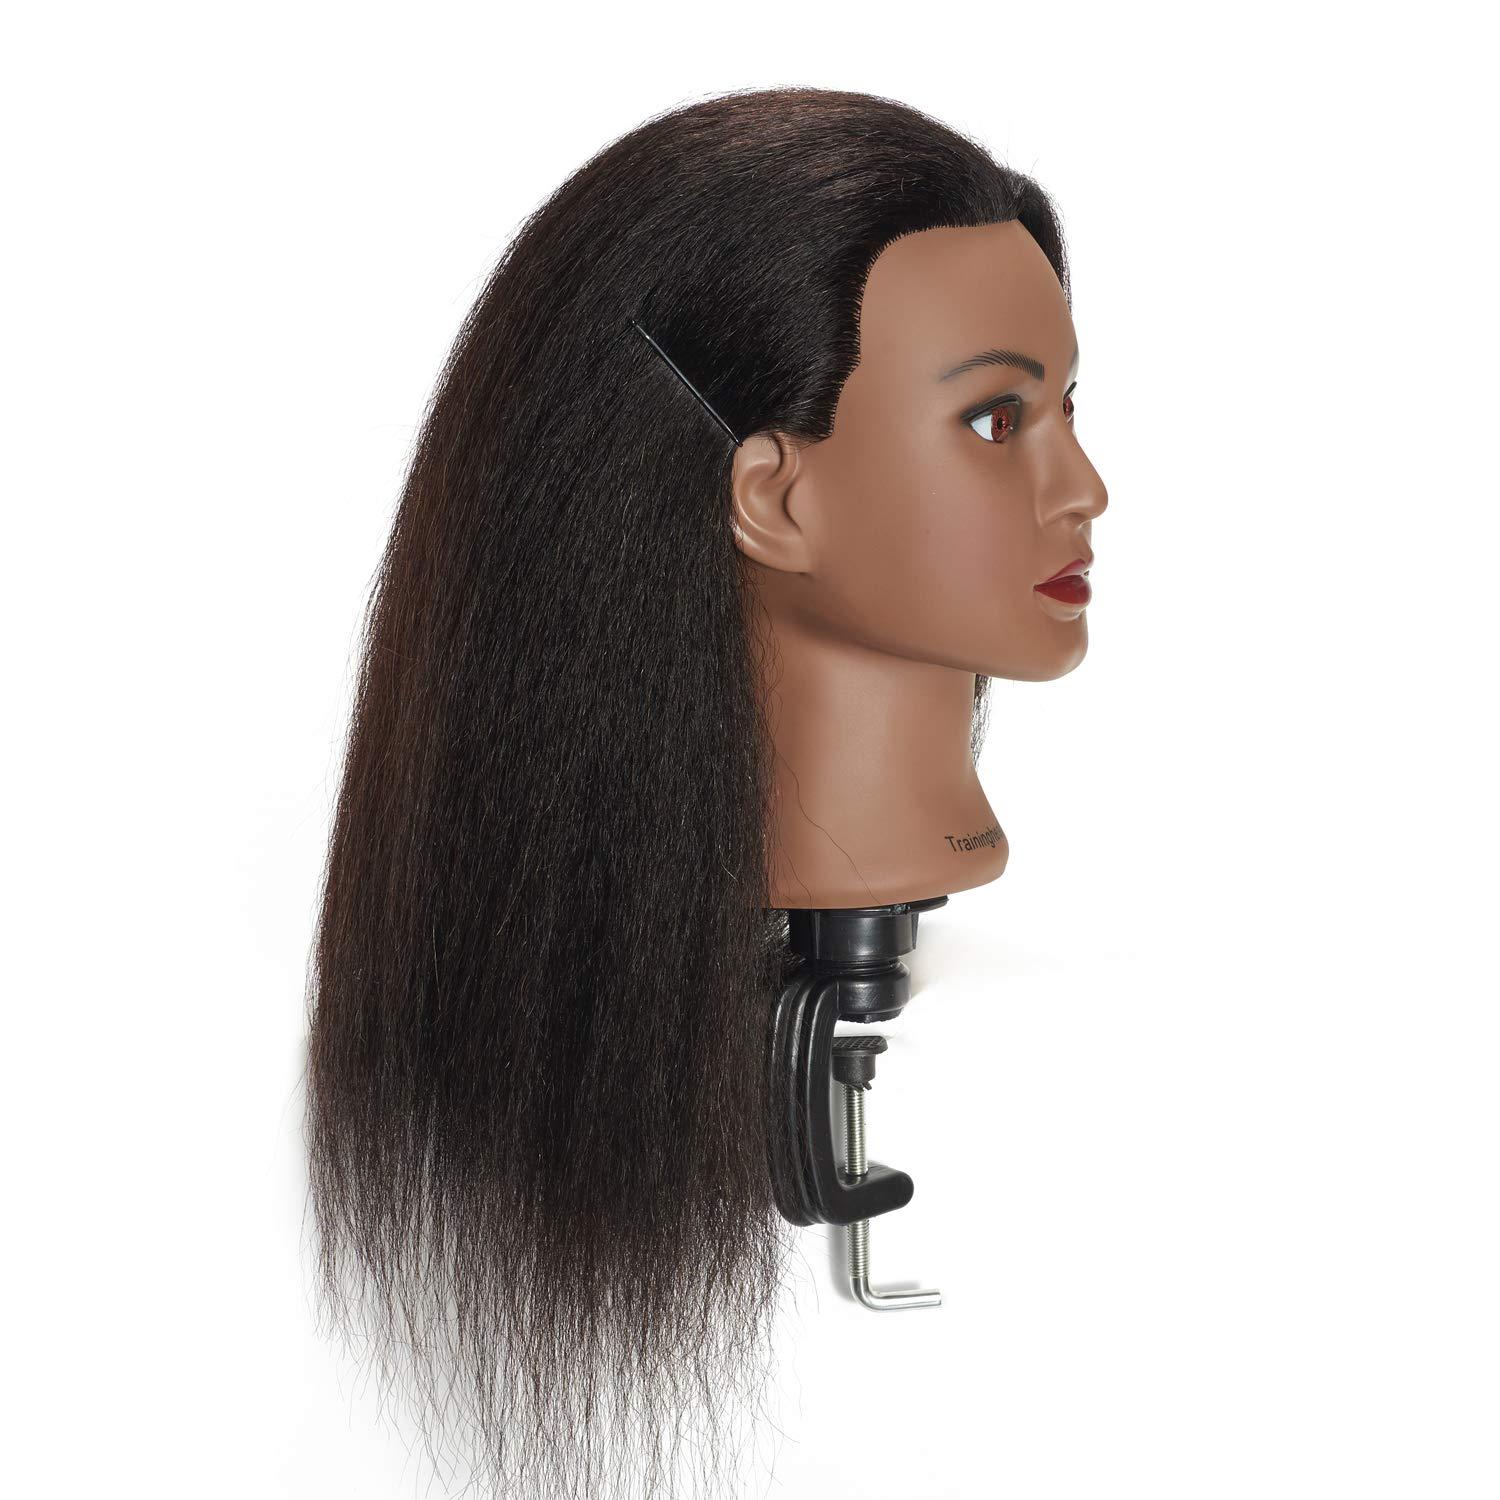 Traininghead 100% Real Hair Mannequin Head Training Head